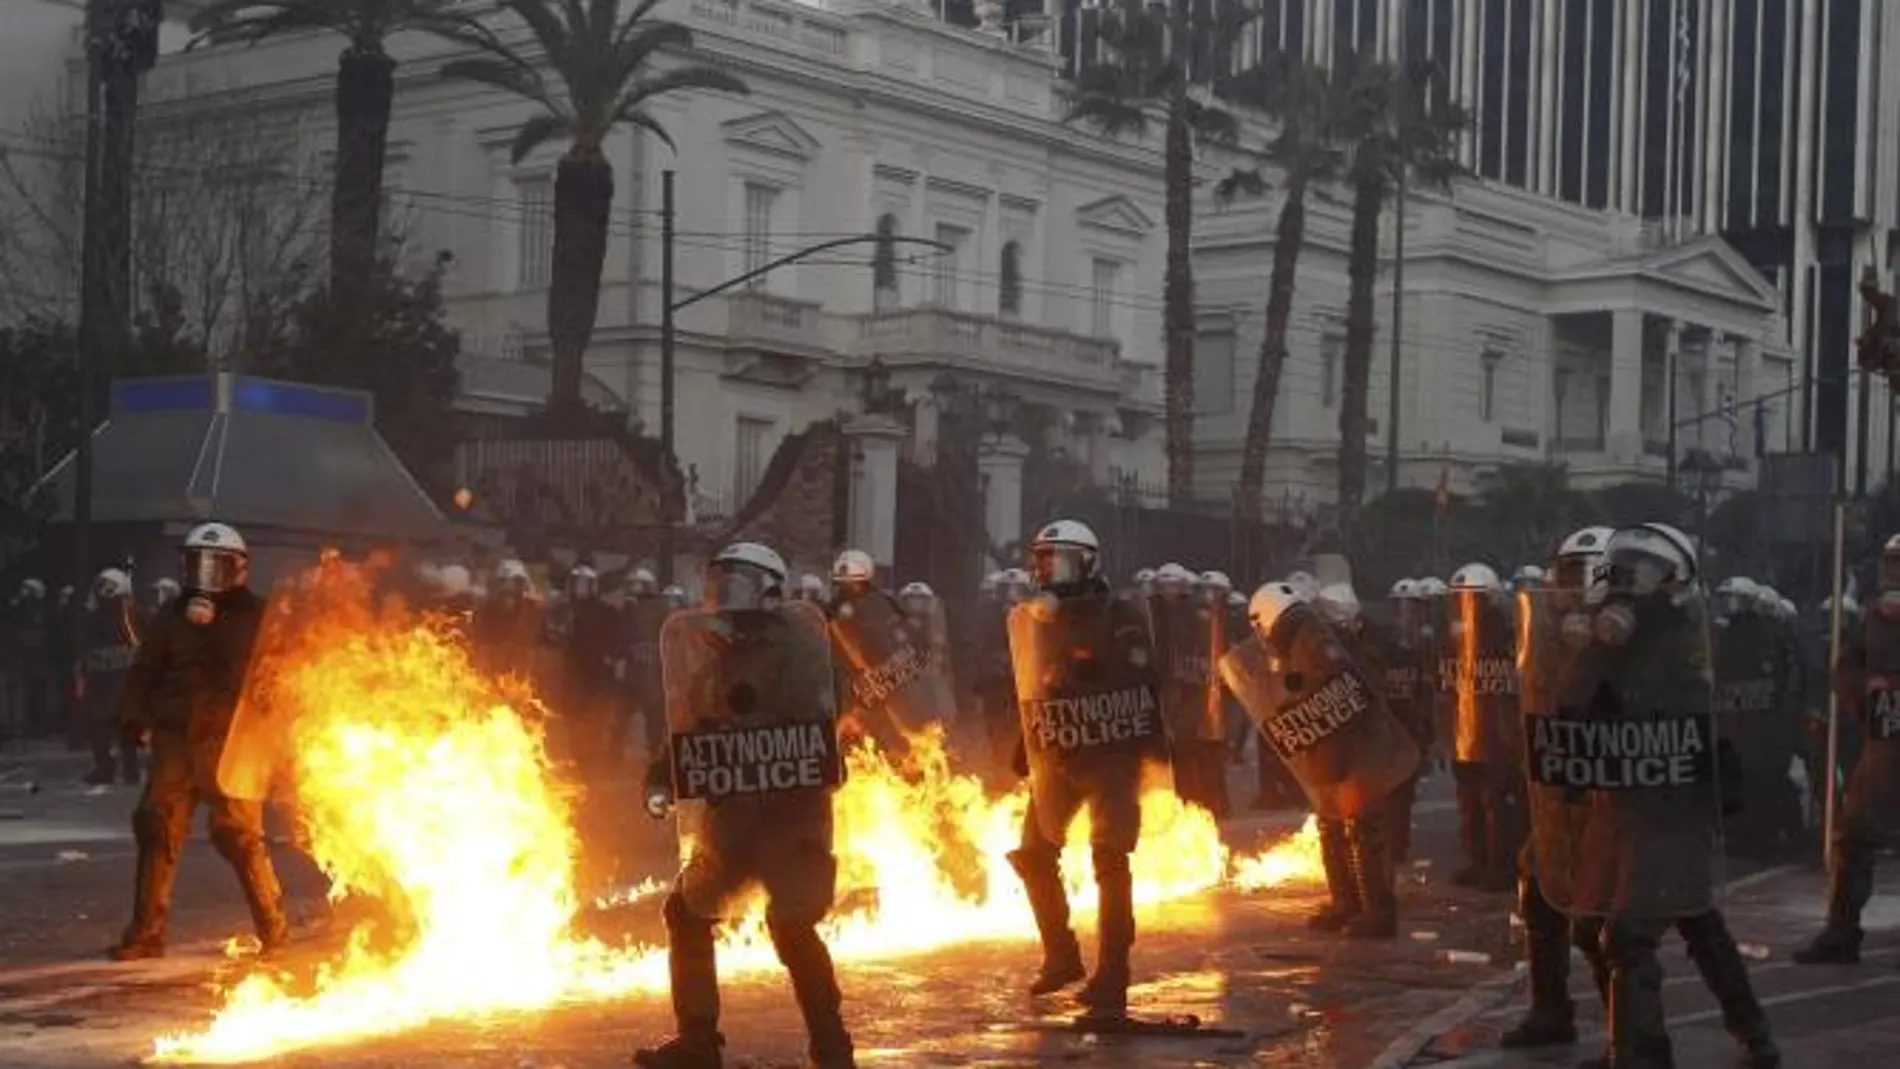 El Parlamento griego aprueba el plan de recortes pactado con la troika